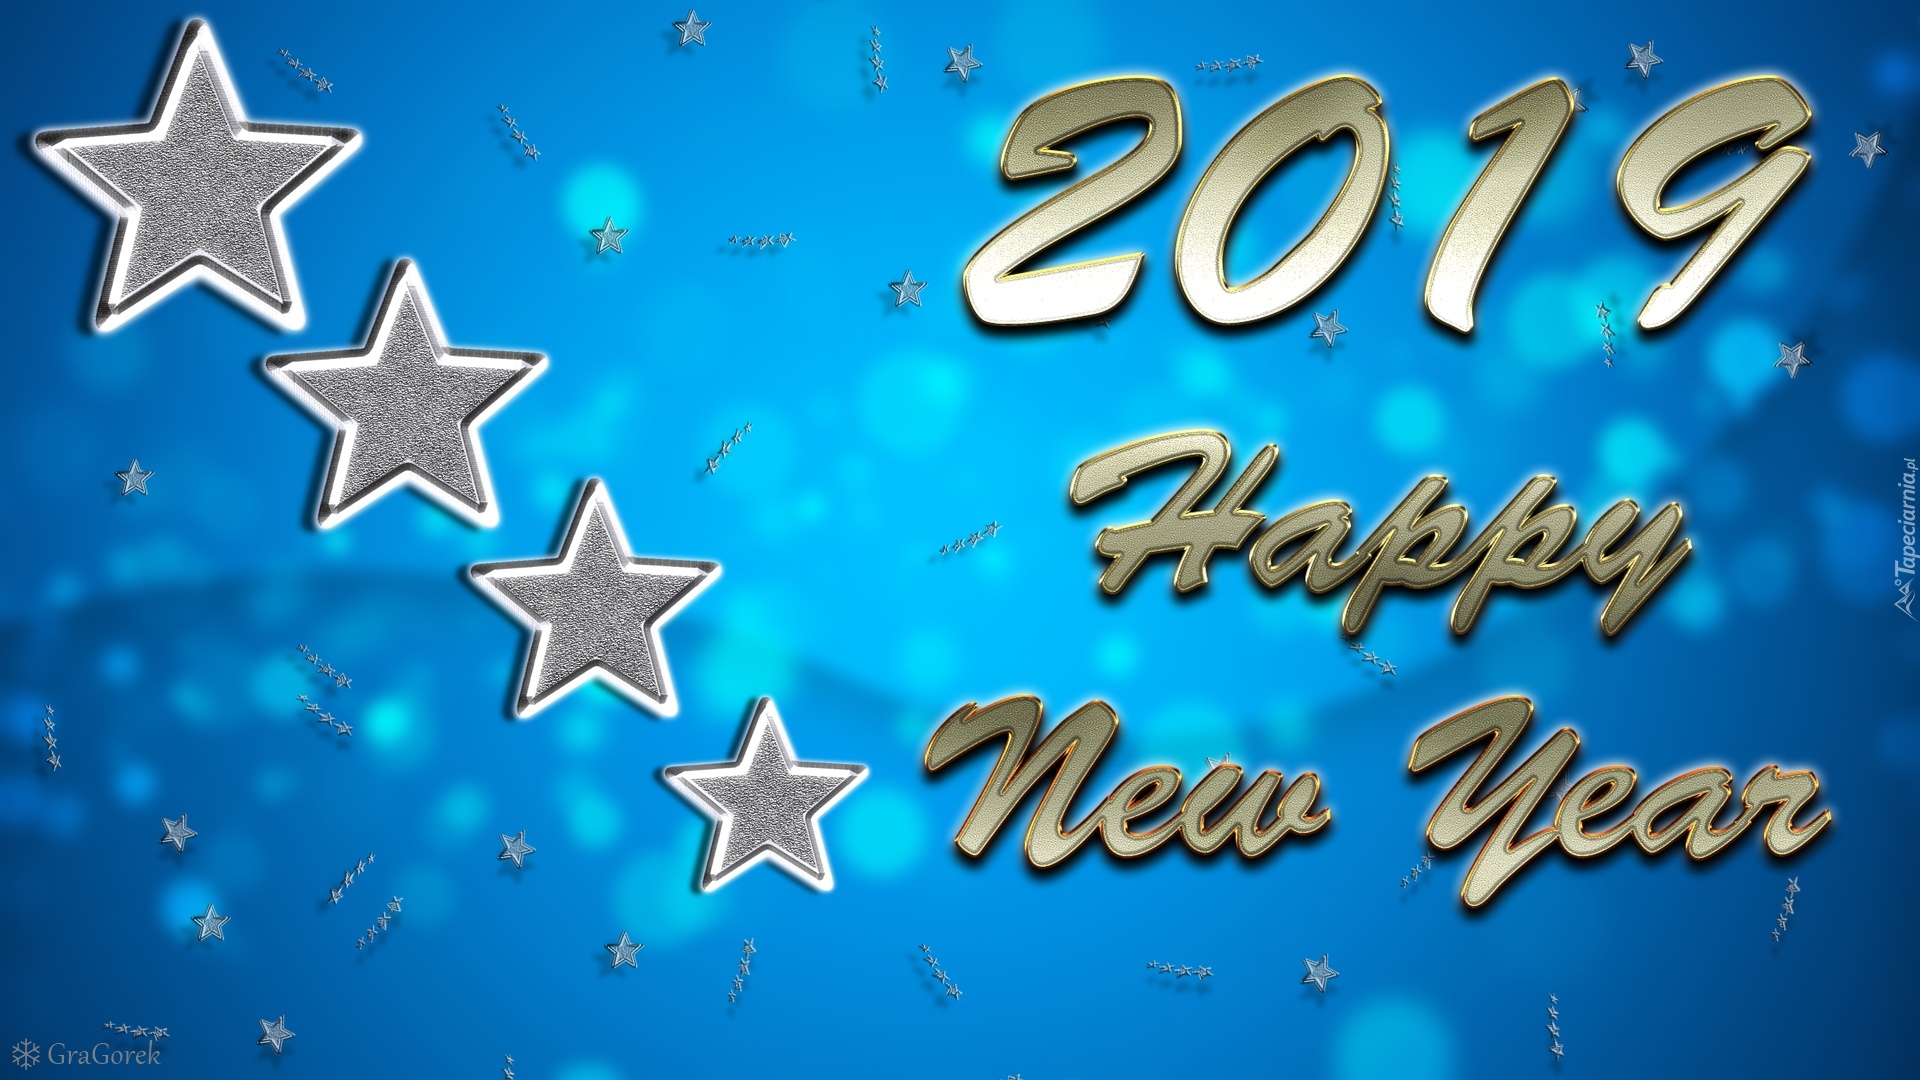 Nowy Rok, 2019, Napis, Życzenia, Gwiazdy, Kartka, Grafika, Niebieskie, Tło